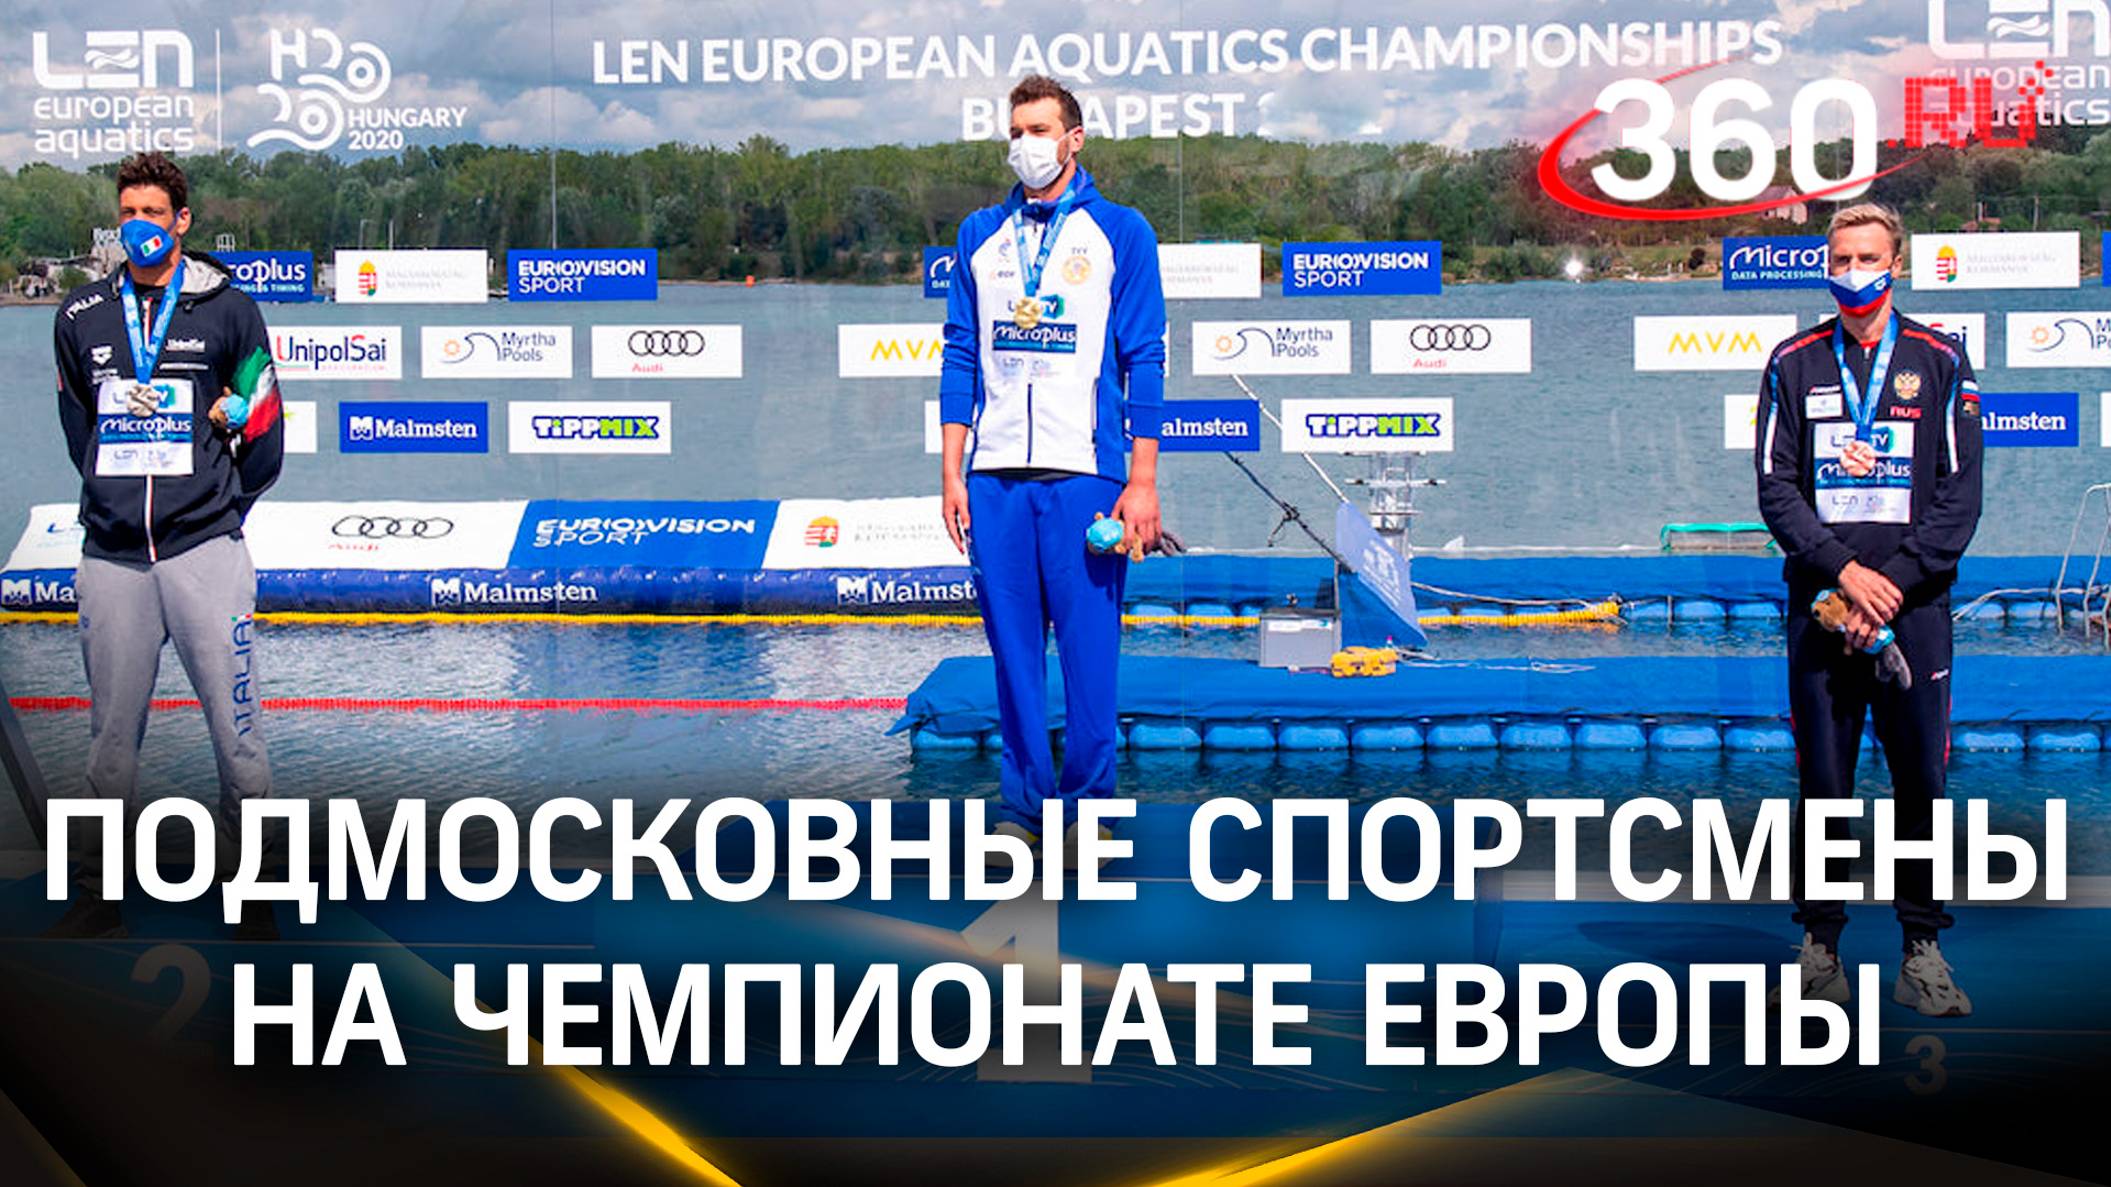 Российская команда завоевала 11 медалей на Чемпионате Европы по гонкам с препятствиями.